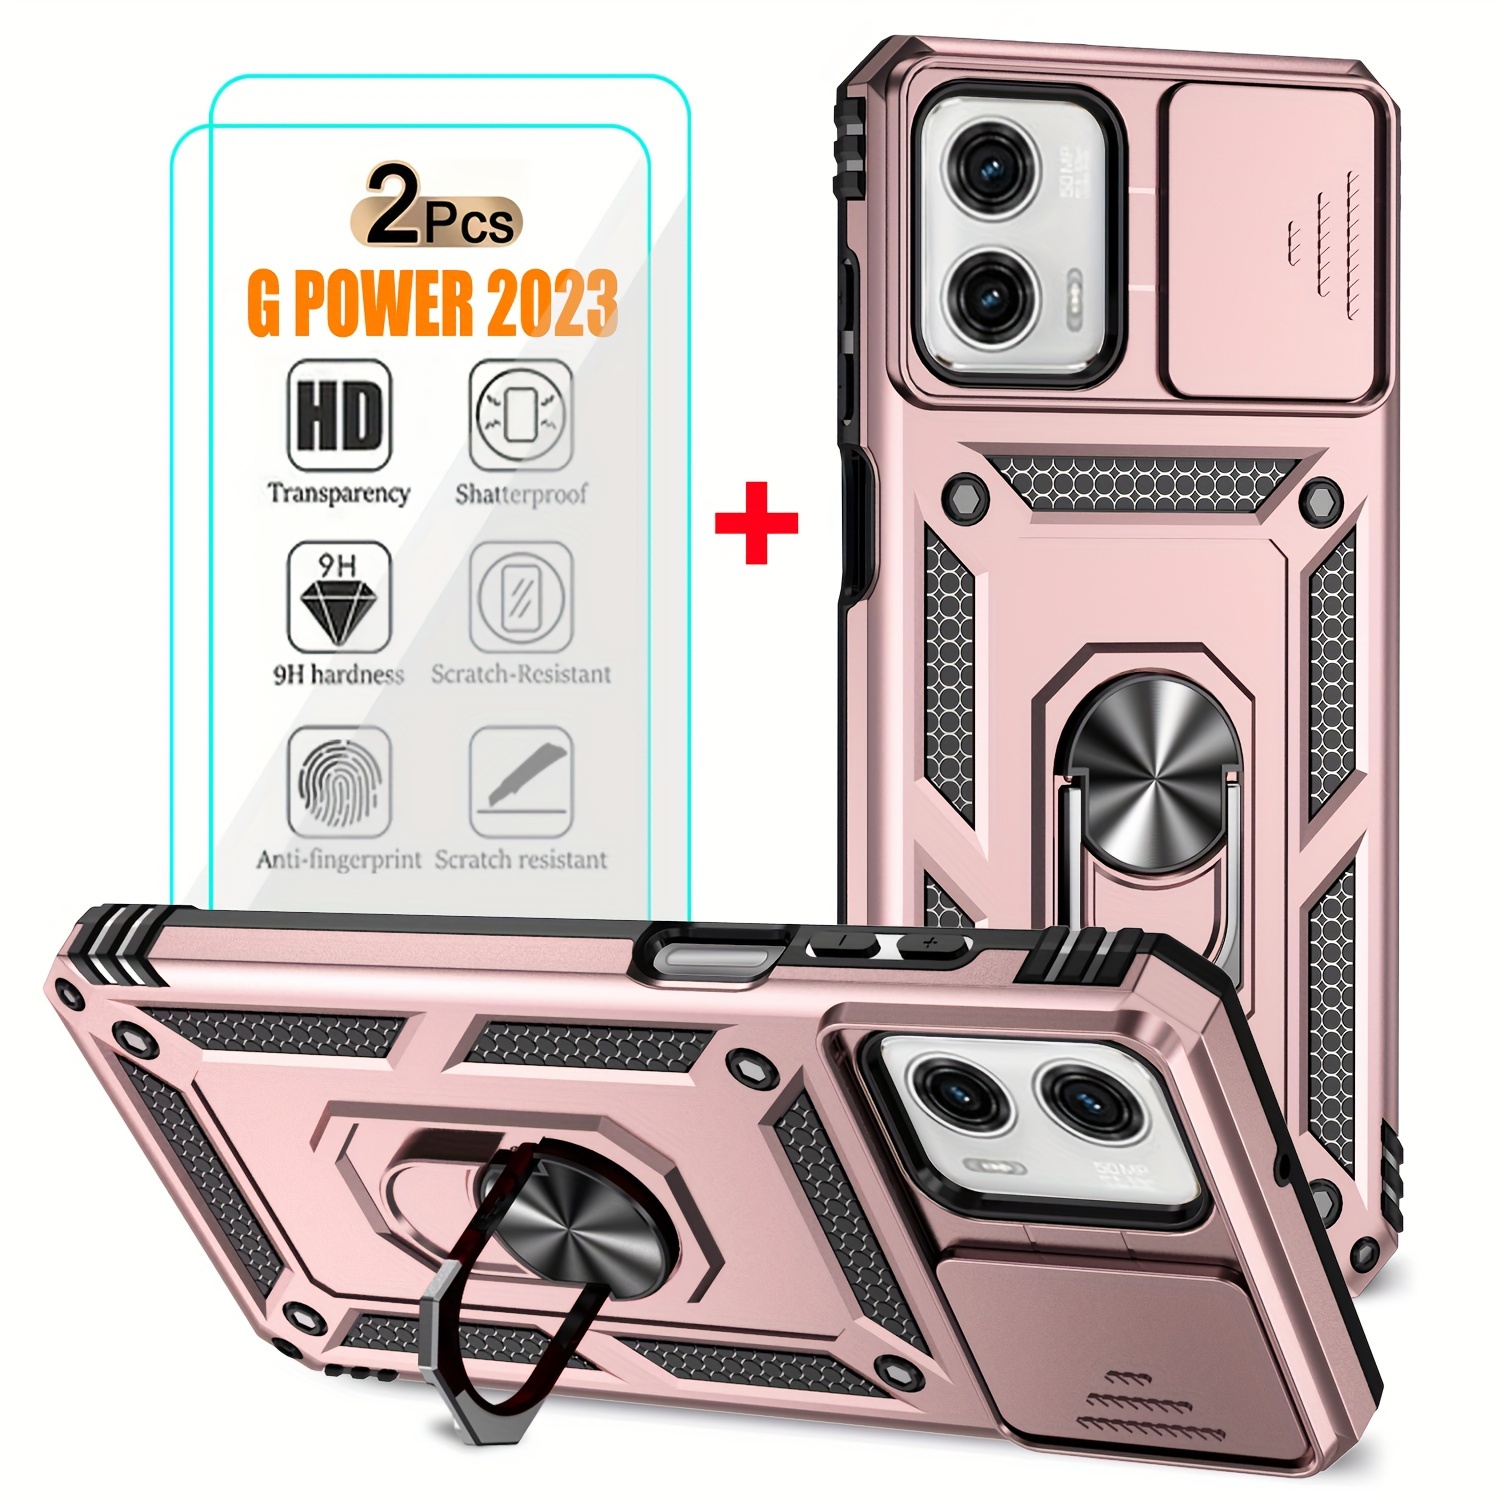 I-HONVA - Carcasa protectora de 3 capas para iPhone SE 2020, protector de  pantalla integrado, a prueba de golpes, polvo y caídas, resistente y